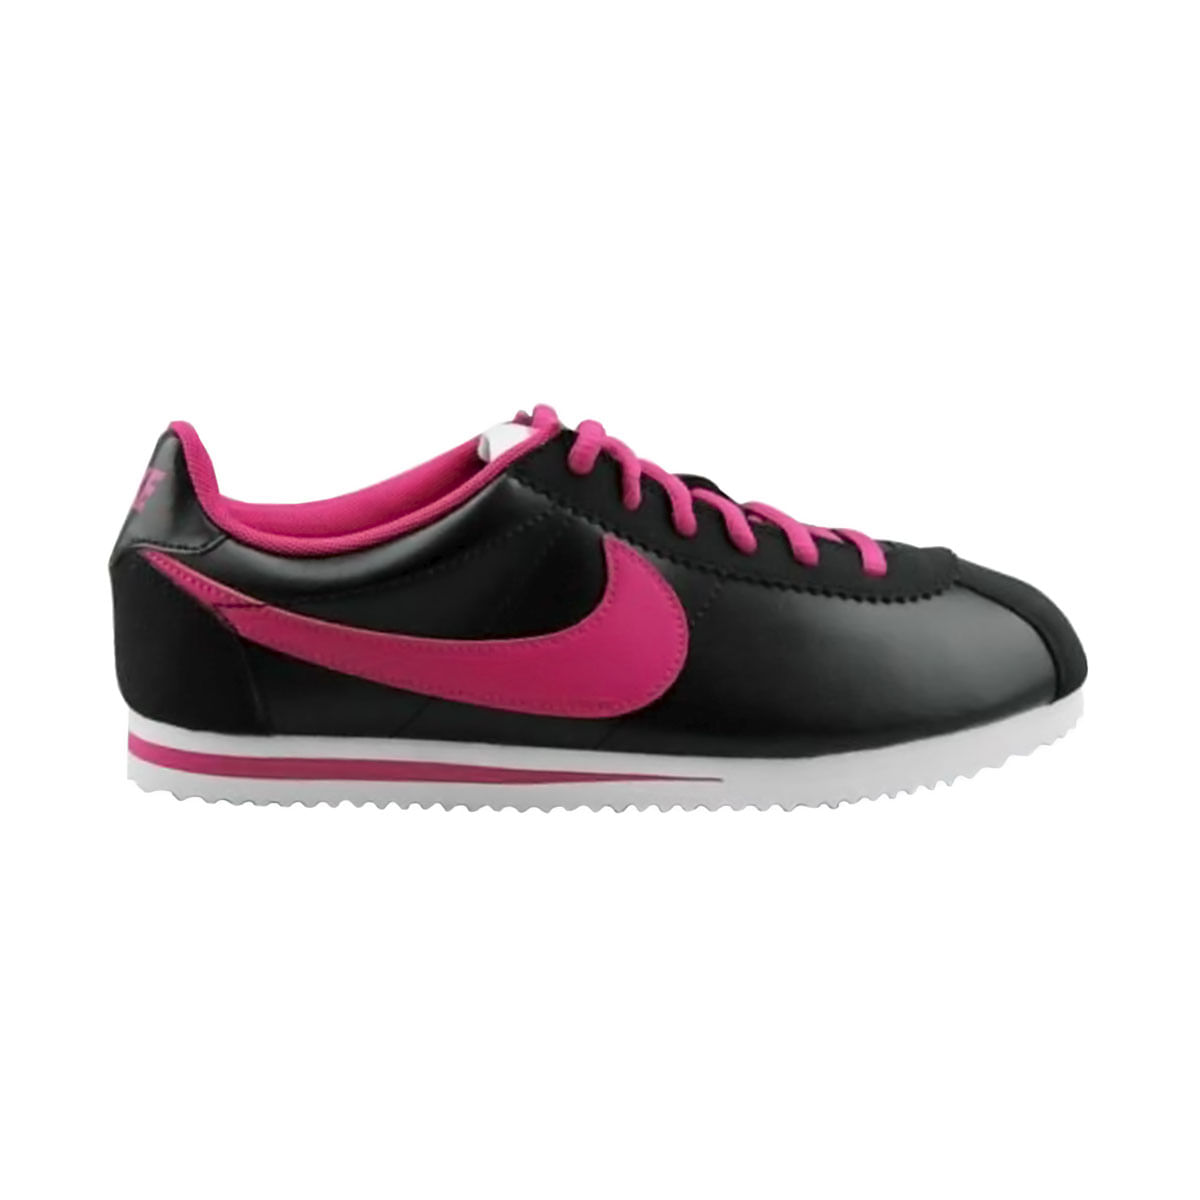 Grabar Cualquier Proverbio Nike Cortez (Gs) - Tenis de niña para correr marca Nike referencia:  749502-001 - prochampions